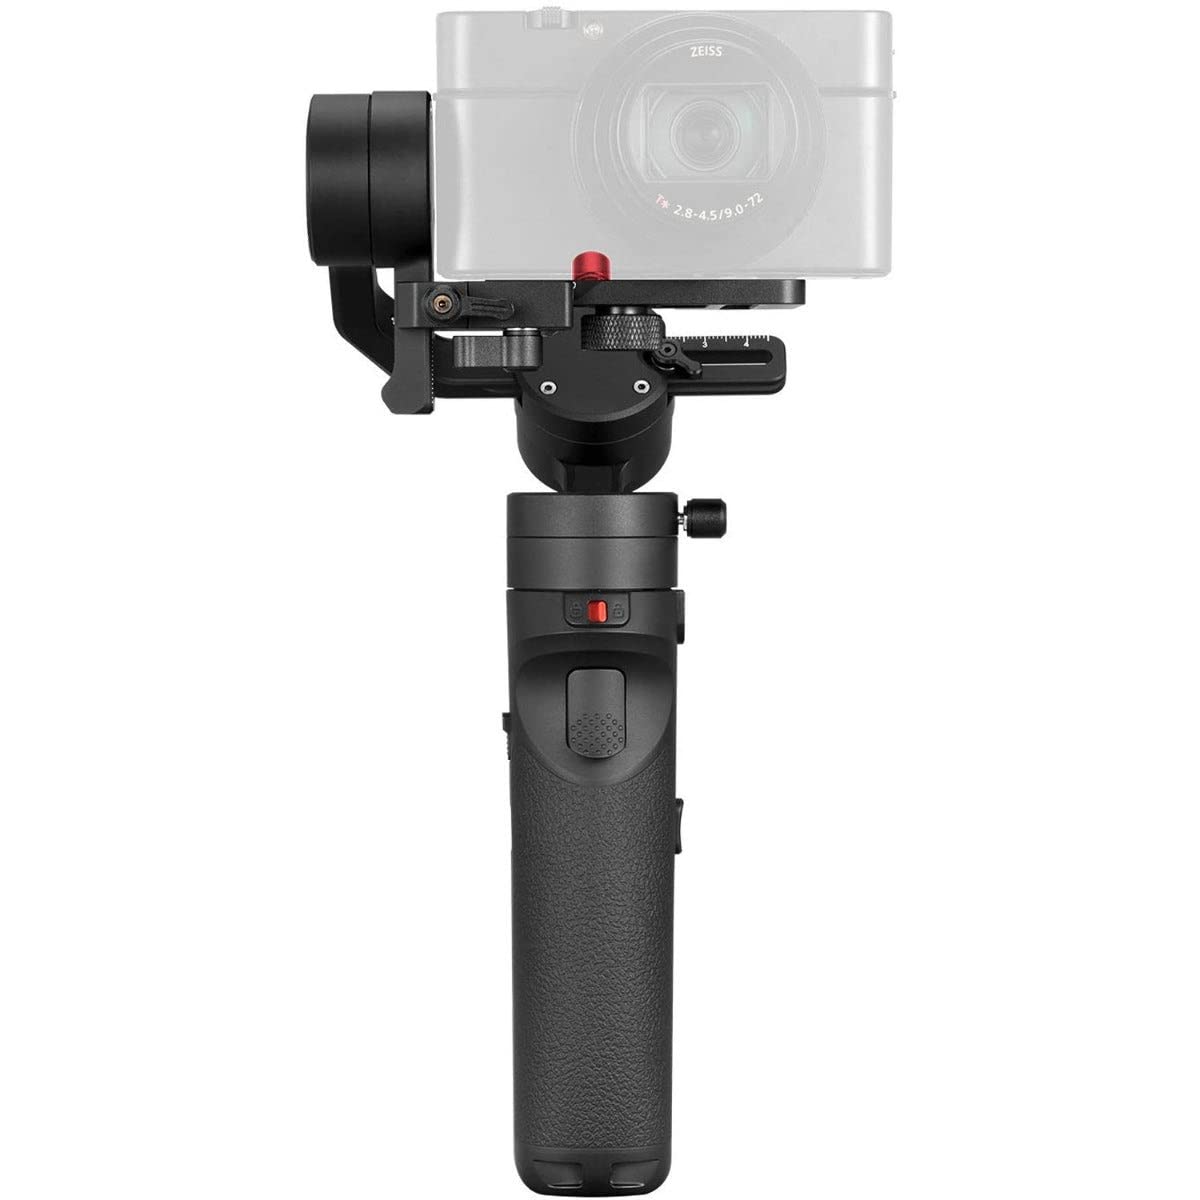 Zhiyun 适用于紧凑型相机、智能手机和 GoPro 的 Crane M2 3 轴万向节